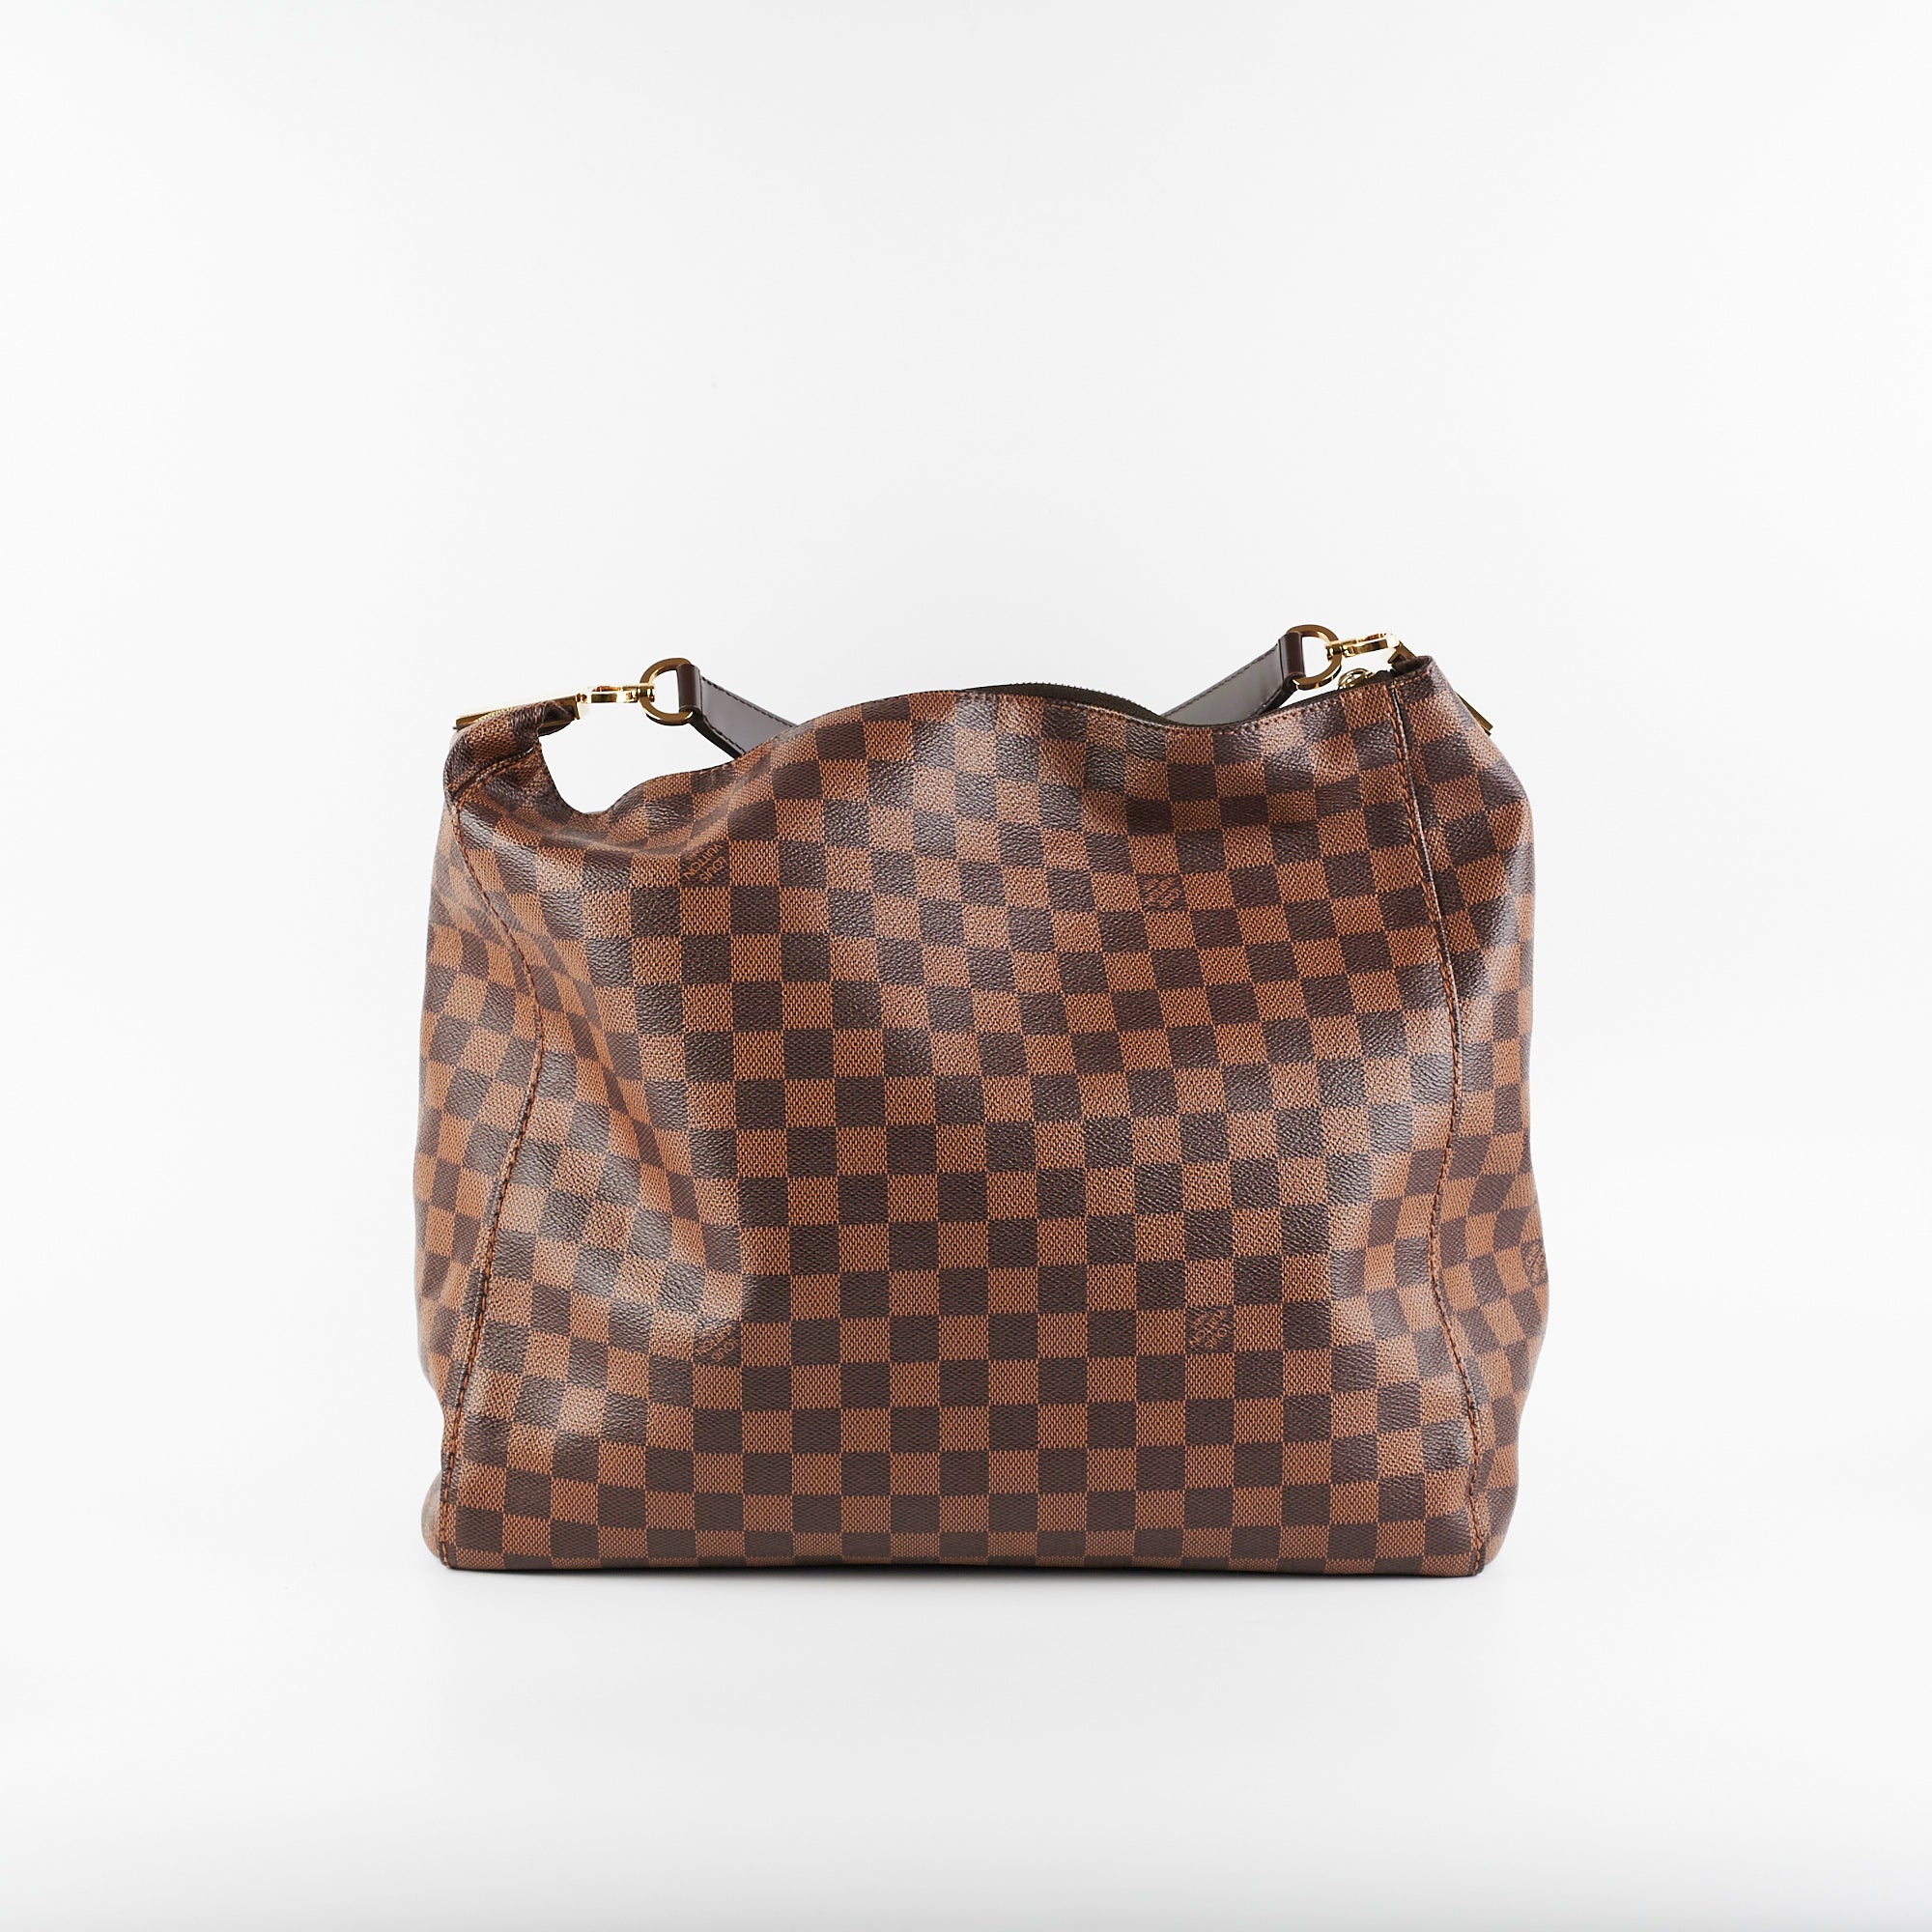 Louis Vuitton, Bags, Portobello Gm Damier